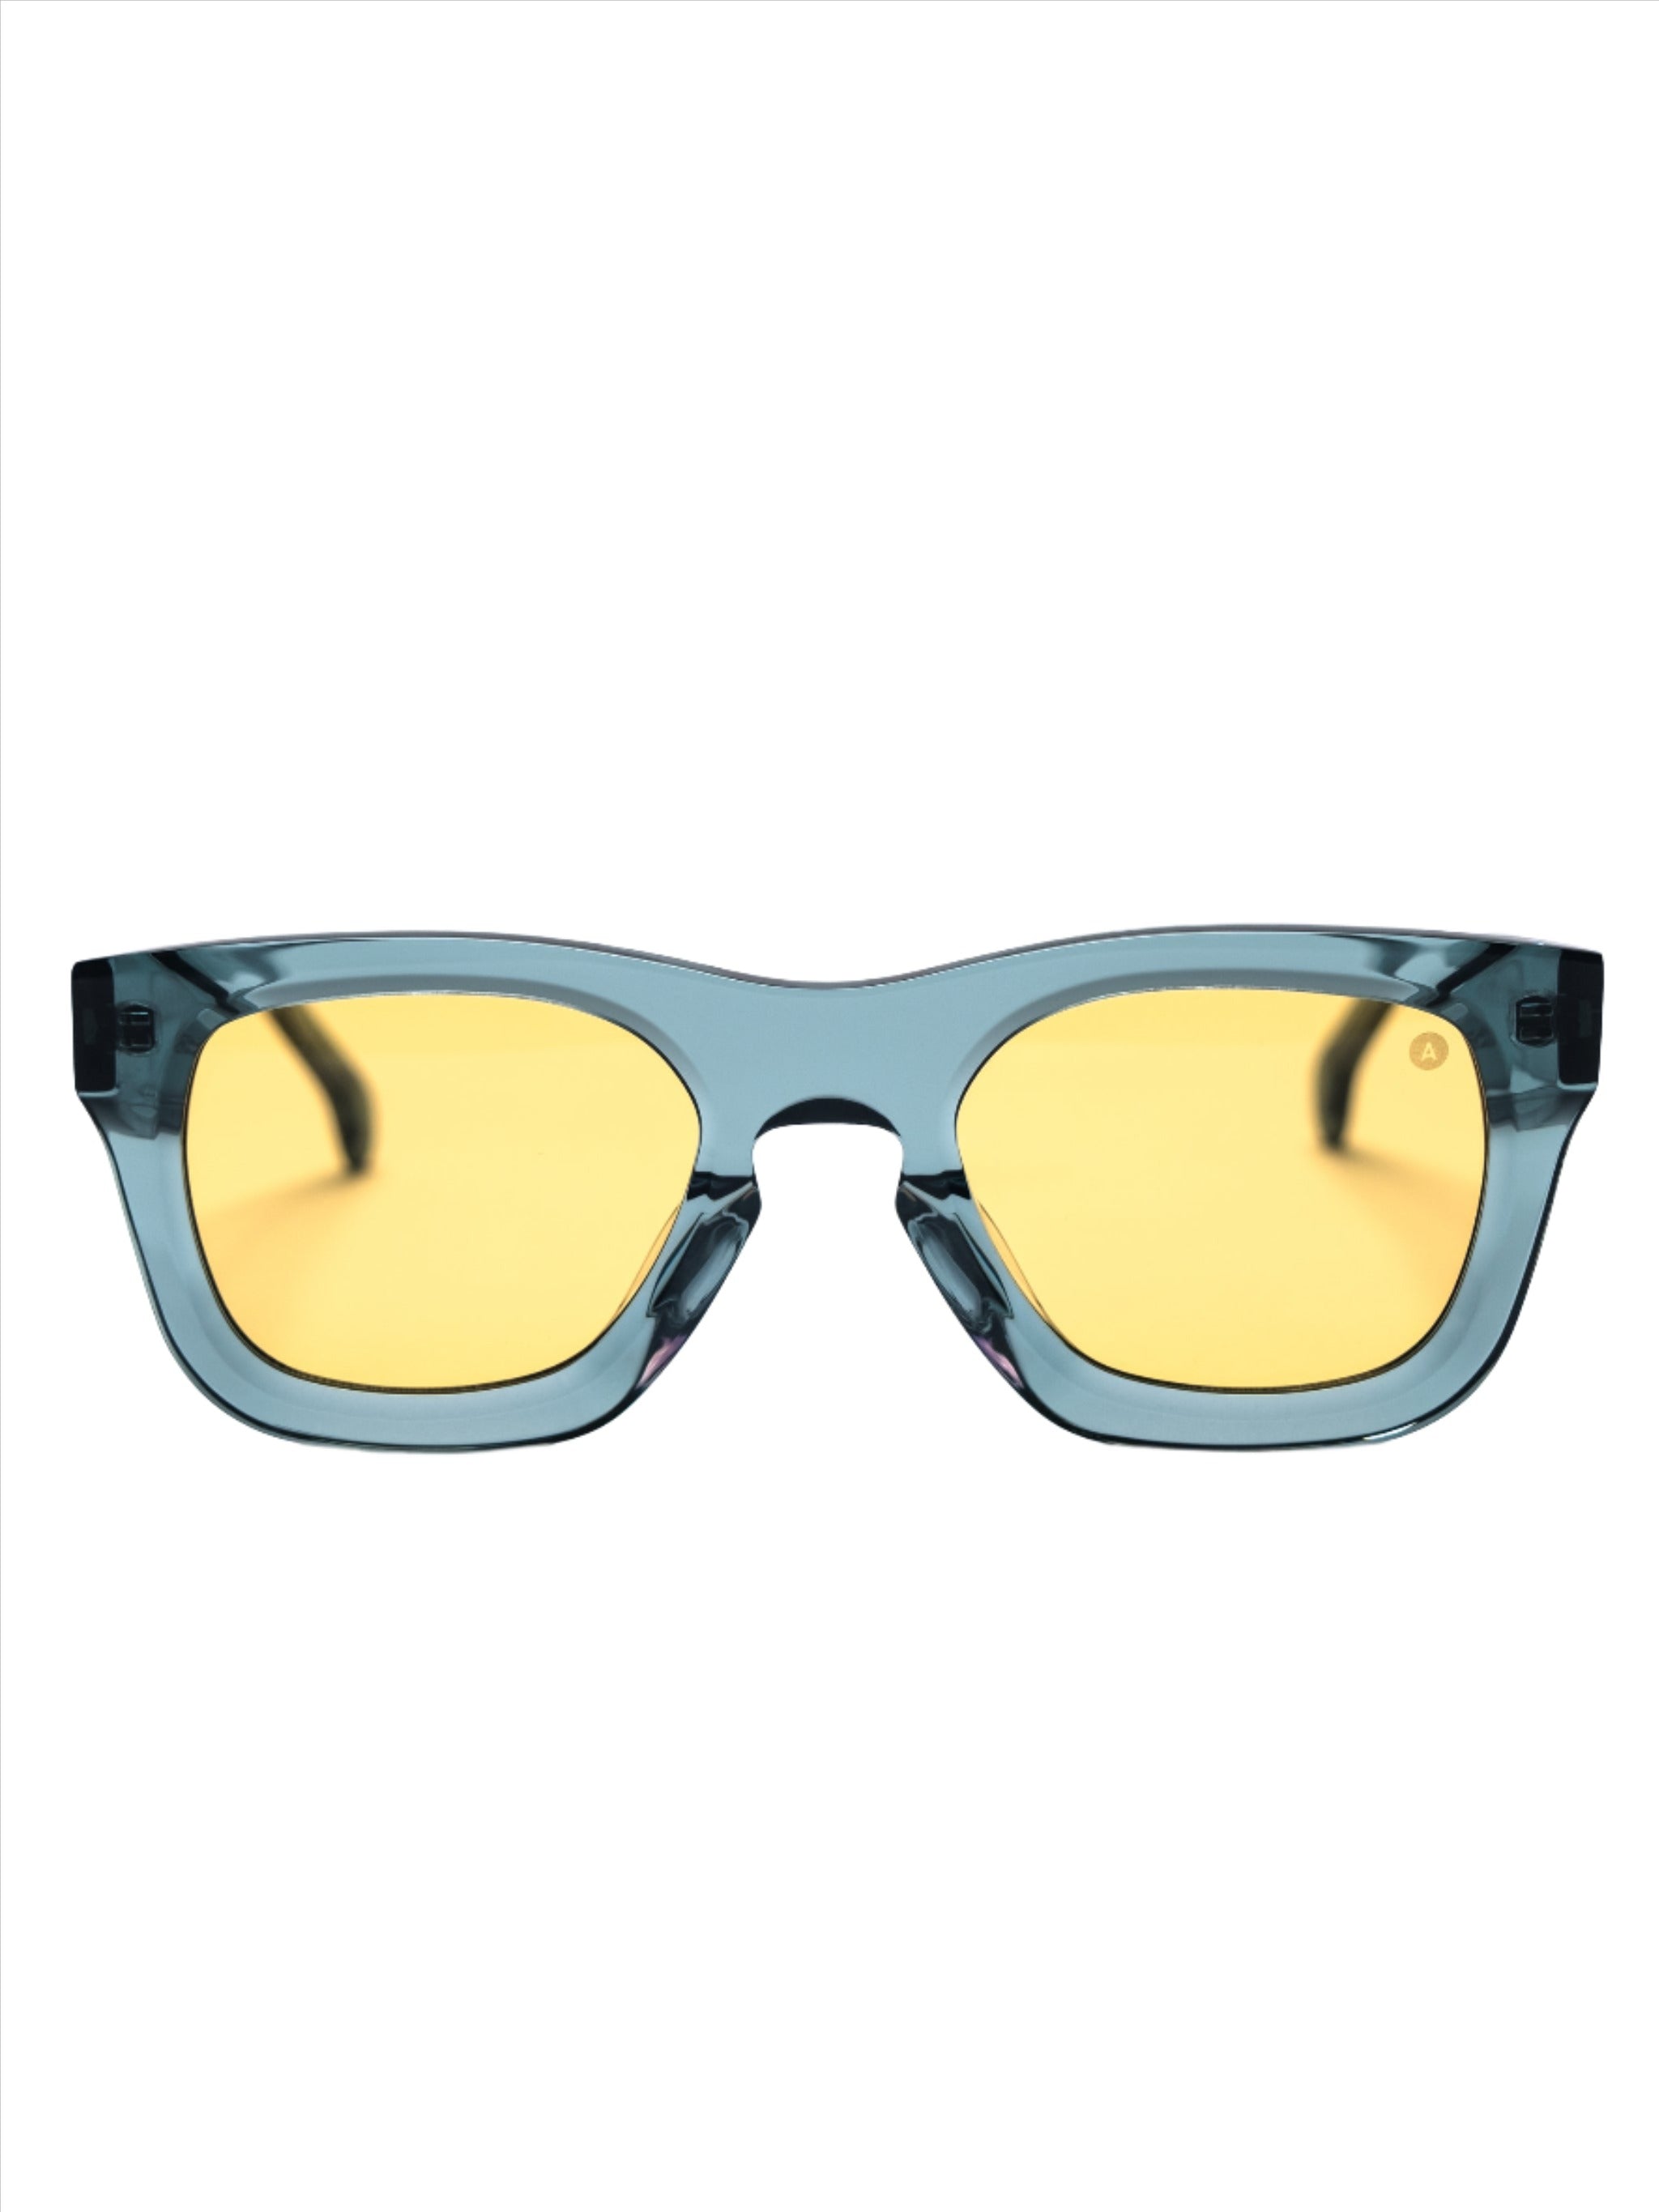 Large Sunglasses - Amazon